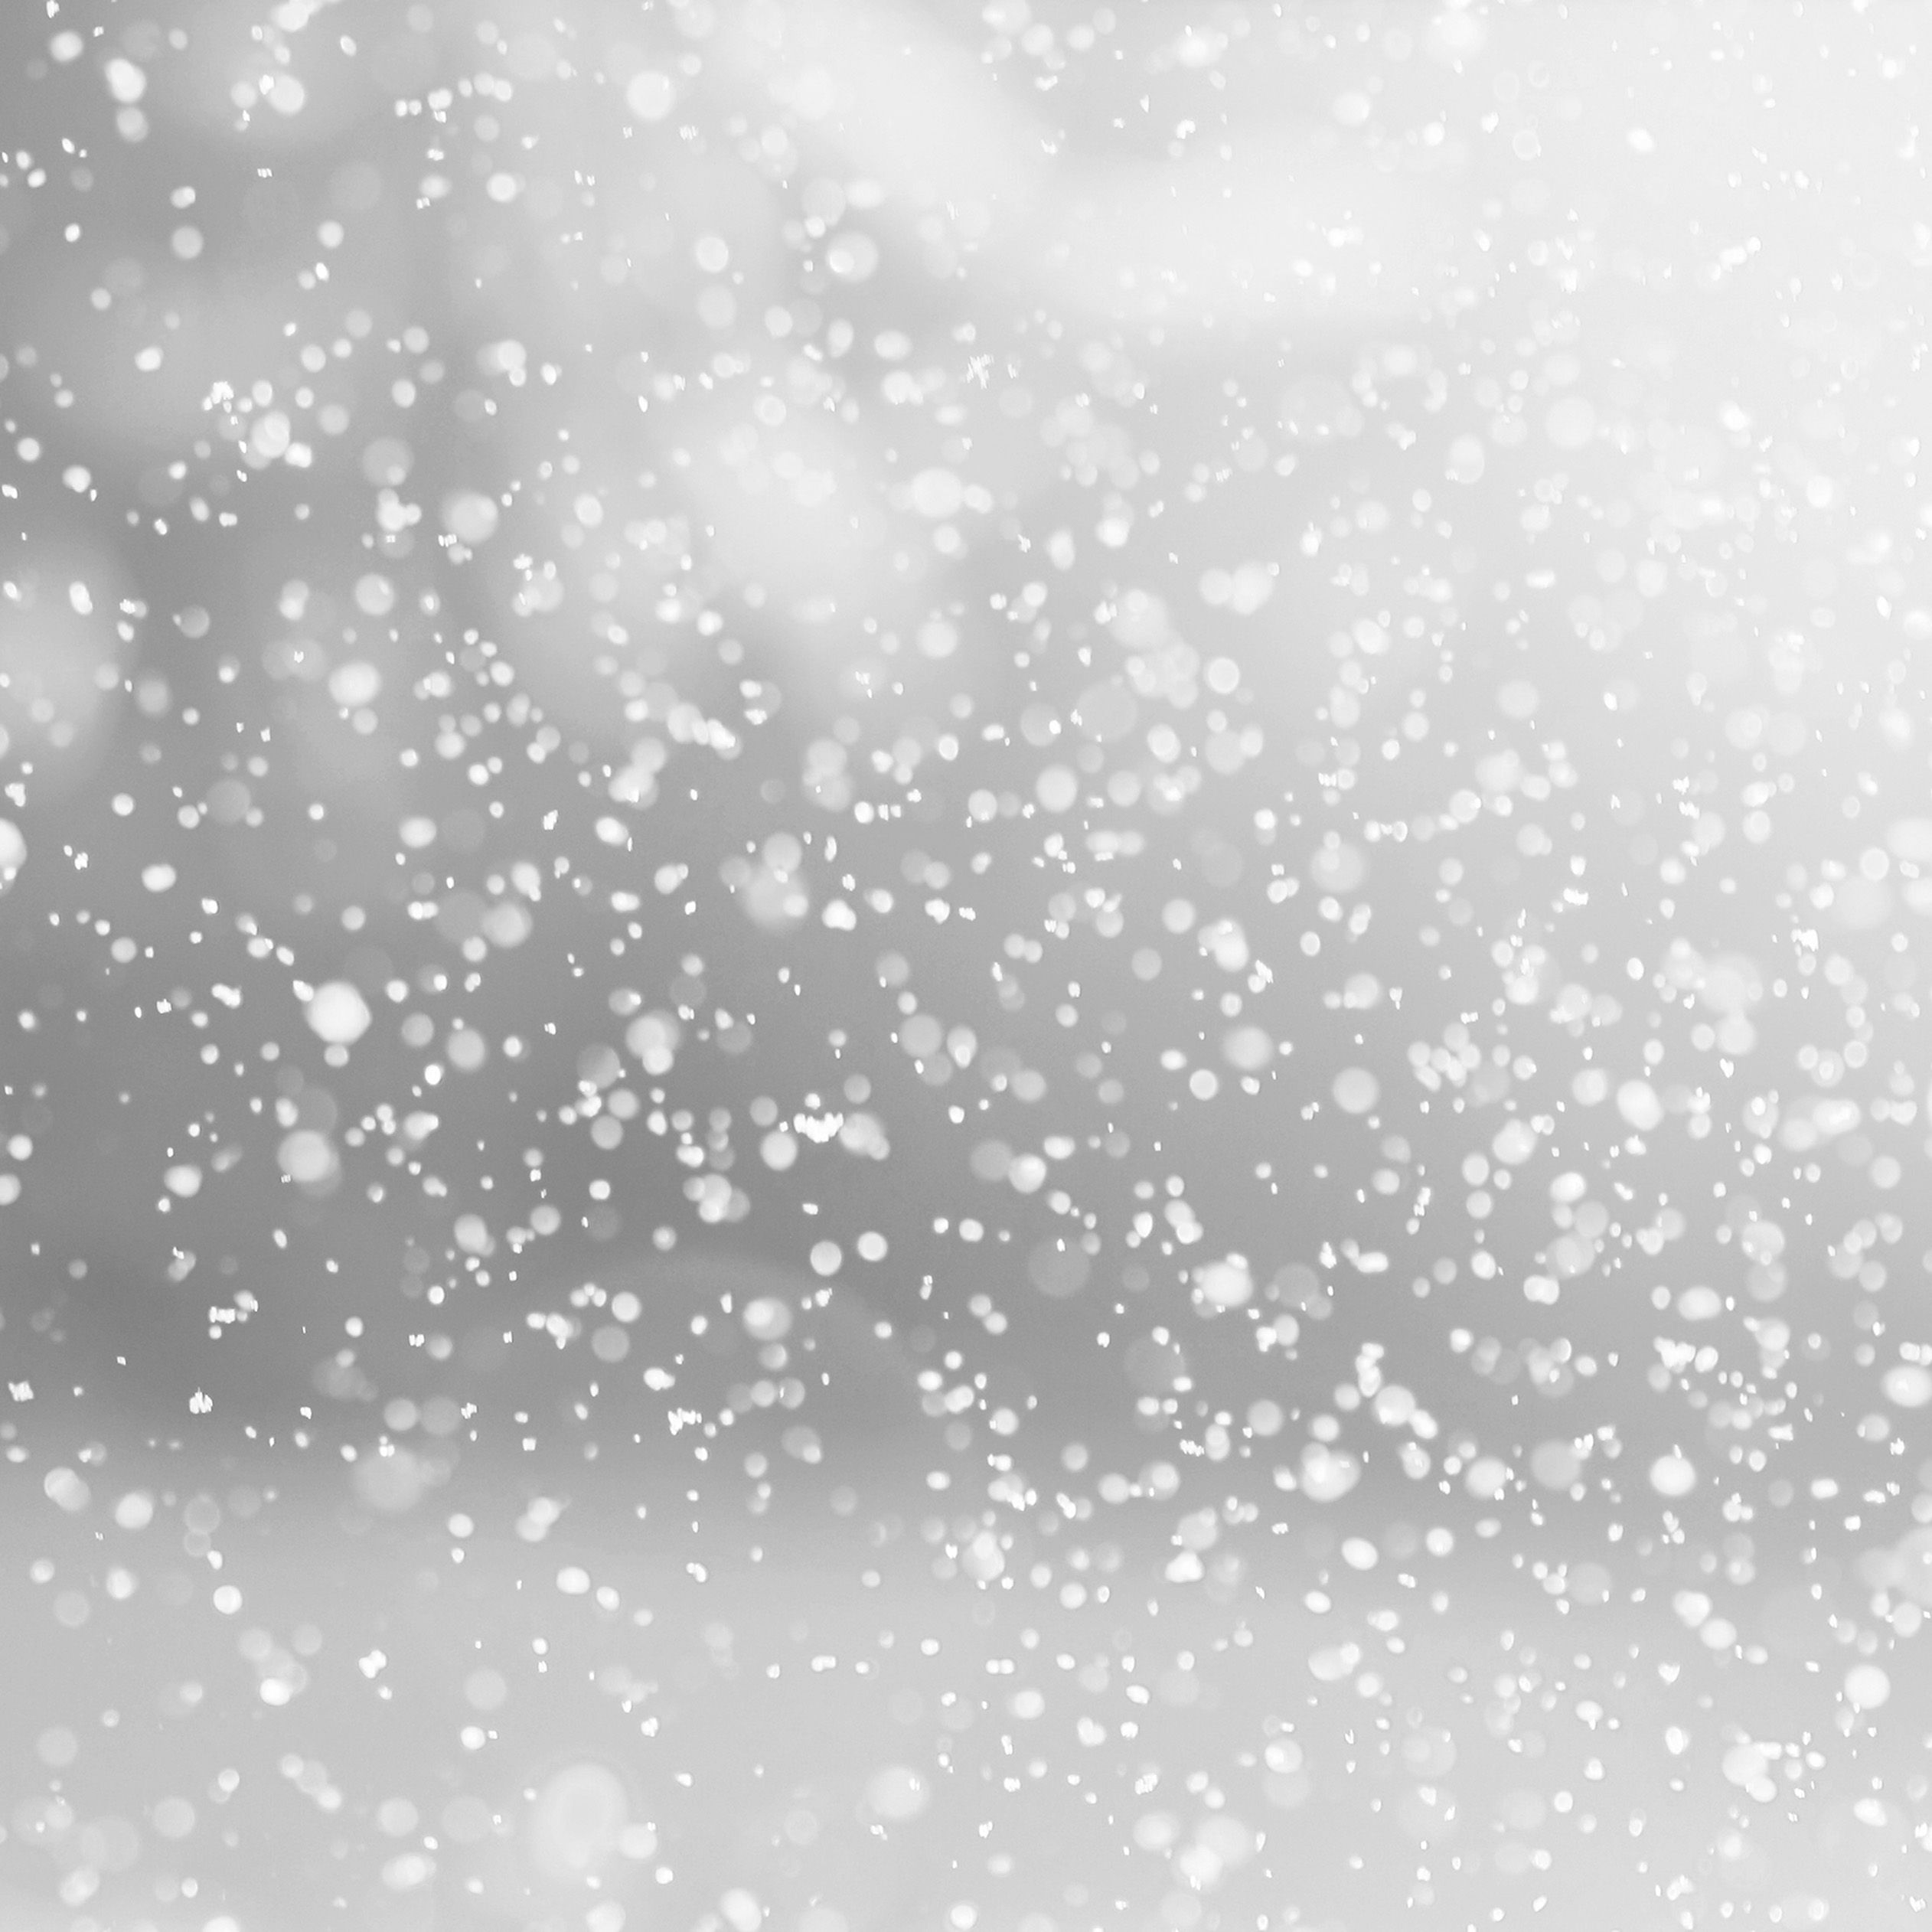 Nieve soplada invierno fondos de pantalla